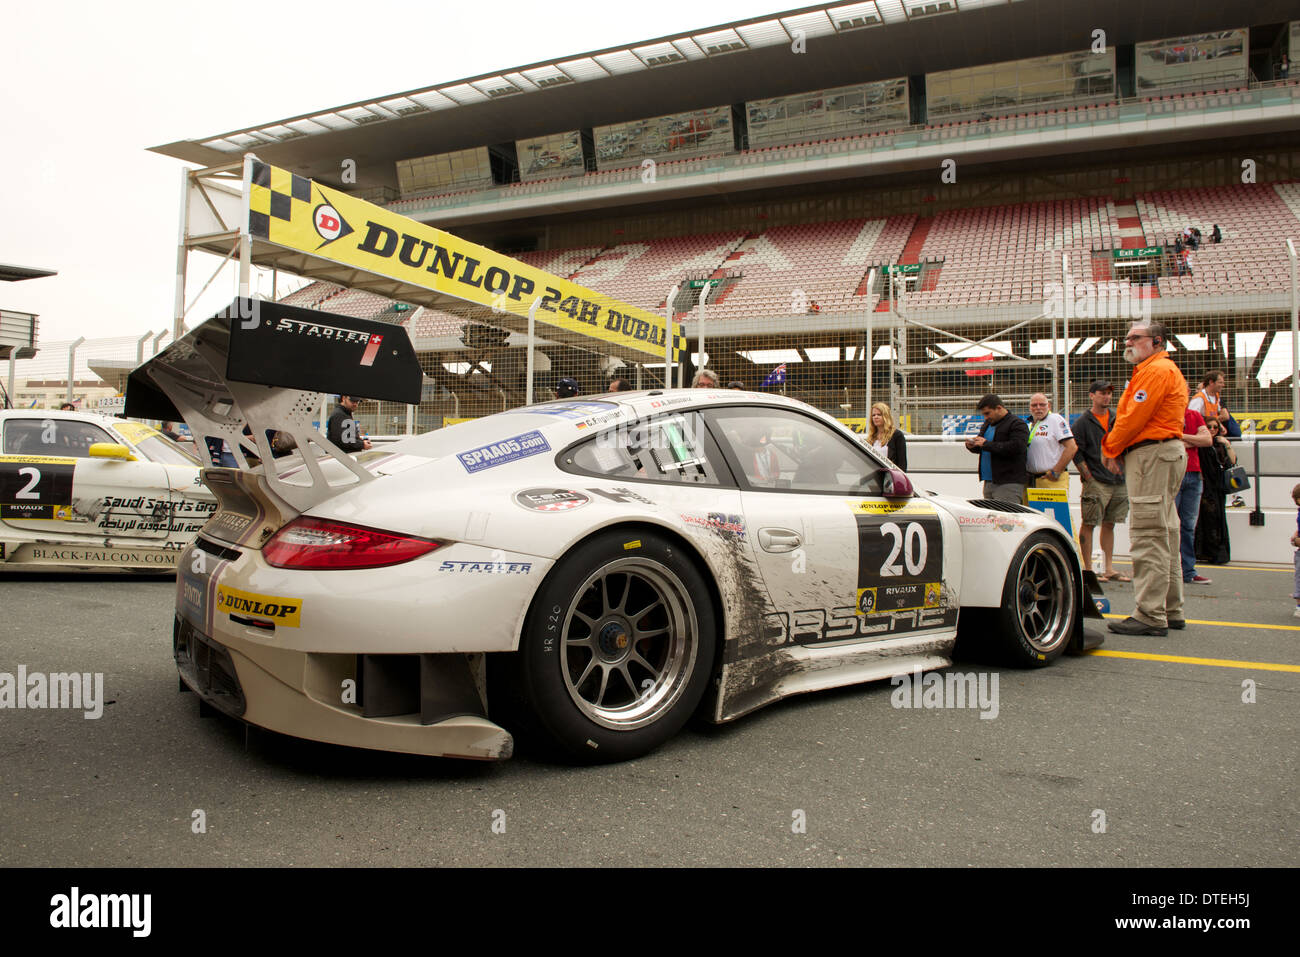 Die siegreiche Porsche 977 GT3 R des Stadler Motorsport-Teams in den Parc  Fermé nach dem Gewinn der Dunlop 24h Dubai Endurance Rennen Stockfotografie  - Alamy